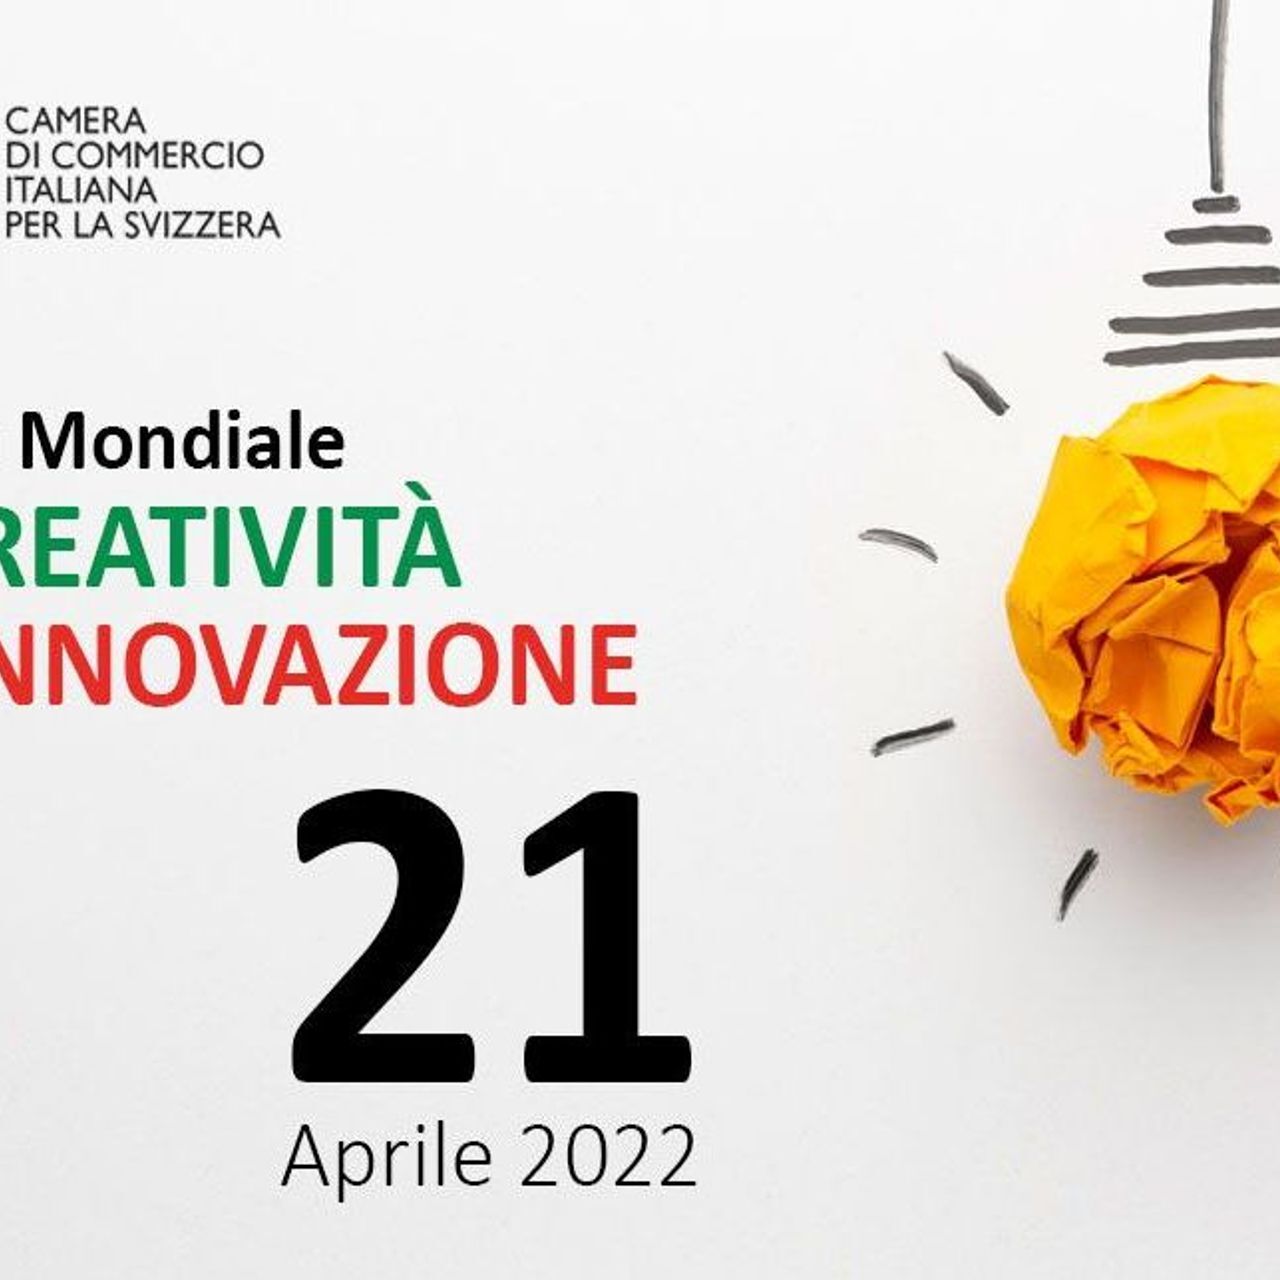 L'immagine di introduzione del video della Giornata della Creatività e dell'Innovazione realizzato dalla Camera di Commercio Italiana per la Svizzera